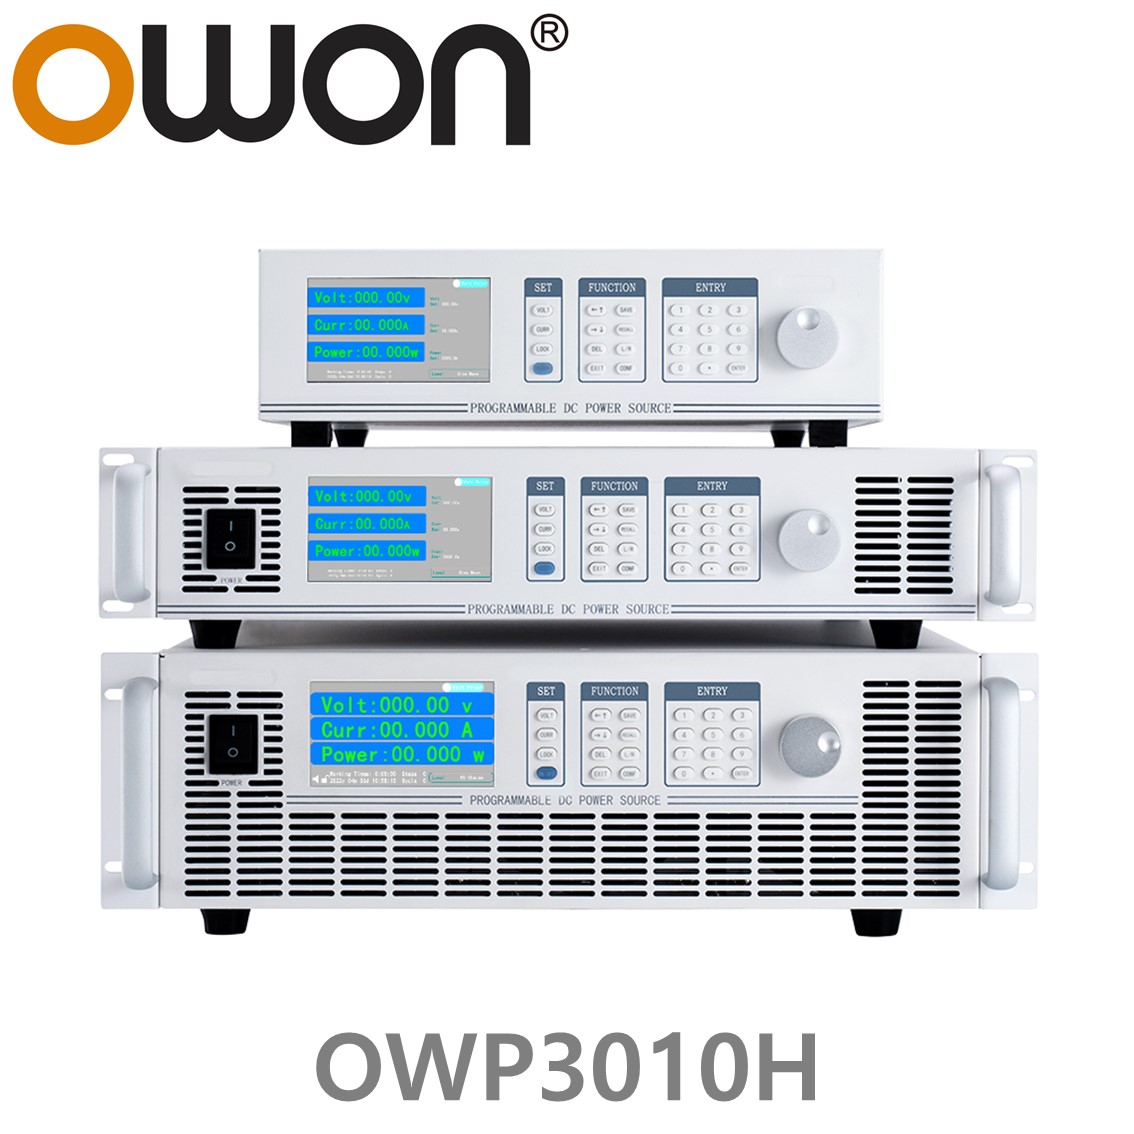 [ OWON ] OWP3010H 고전력 DC파워서플라이, 0-100.00V / 0-45.000A / 3000.0W DC전원공급장치